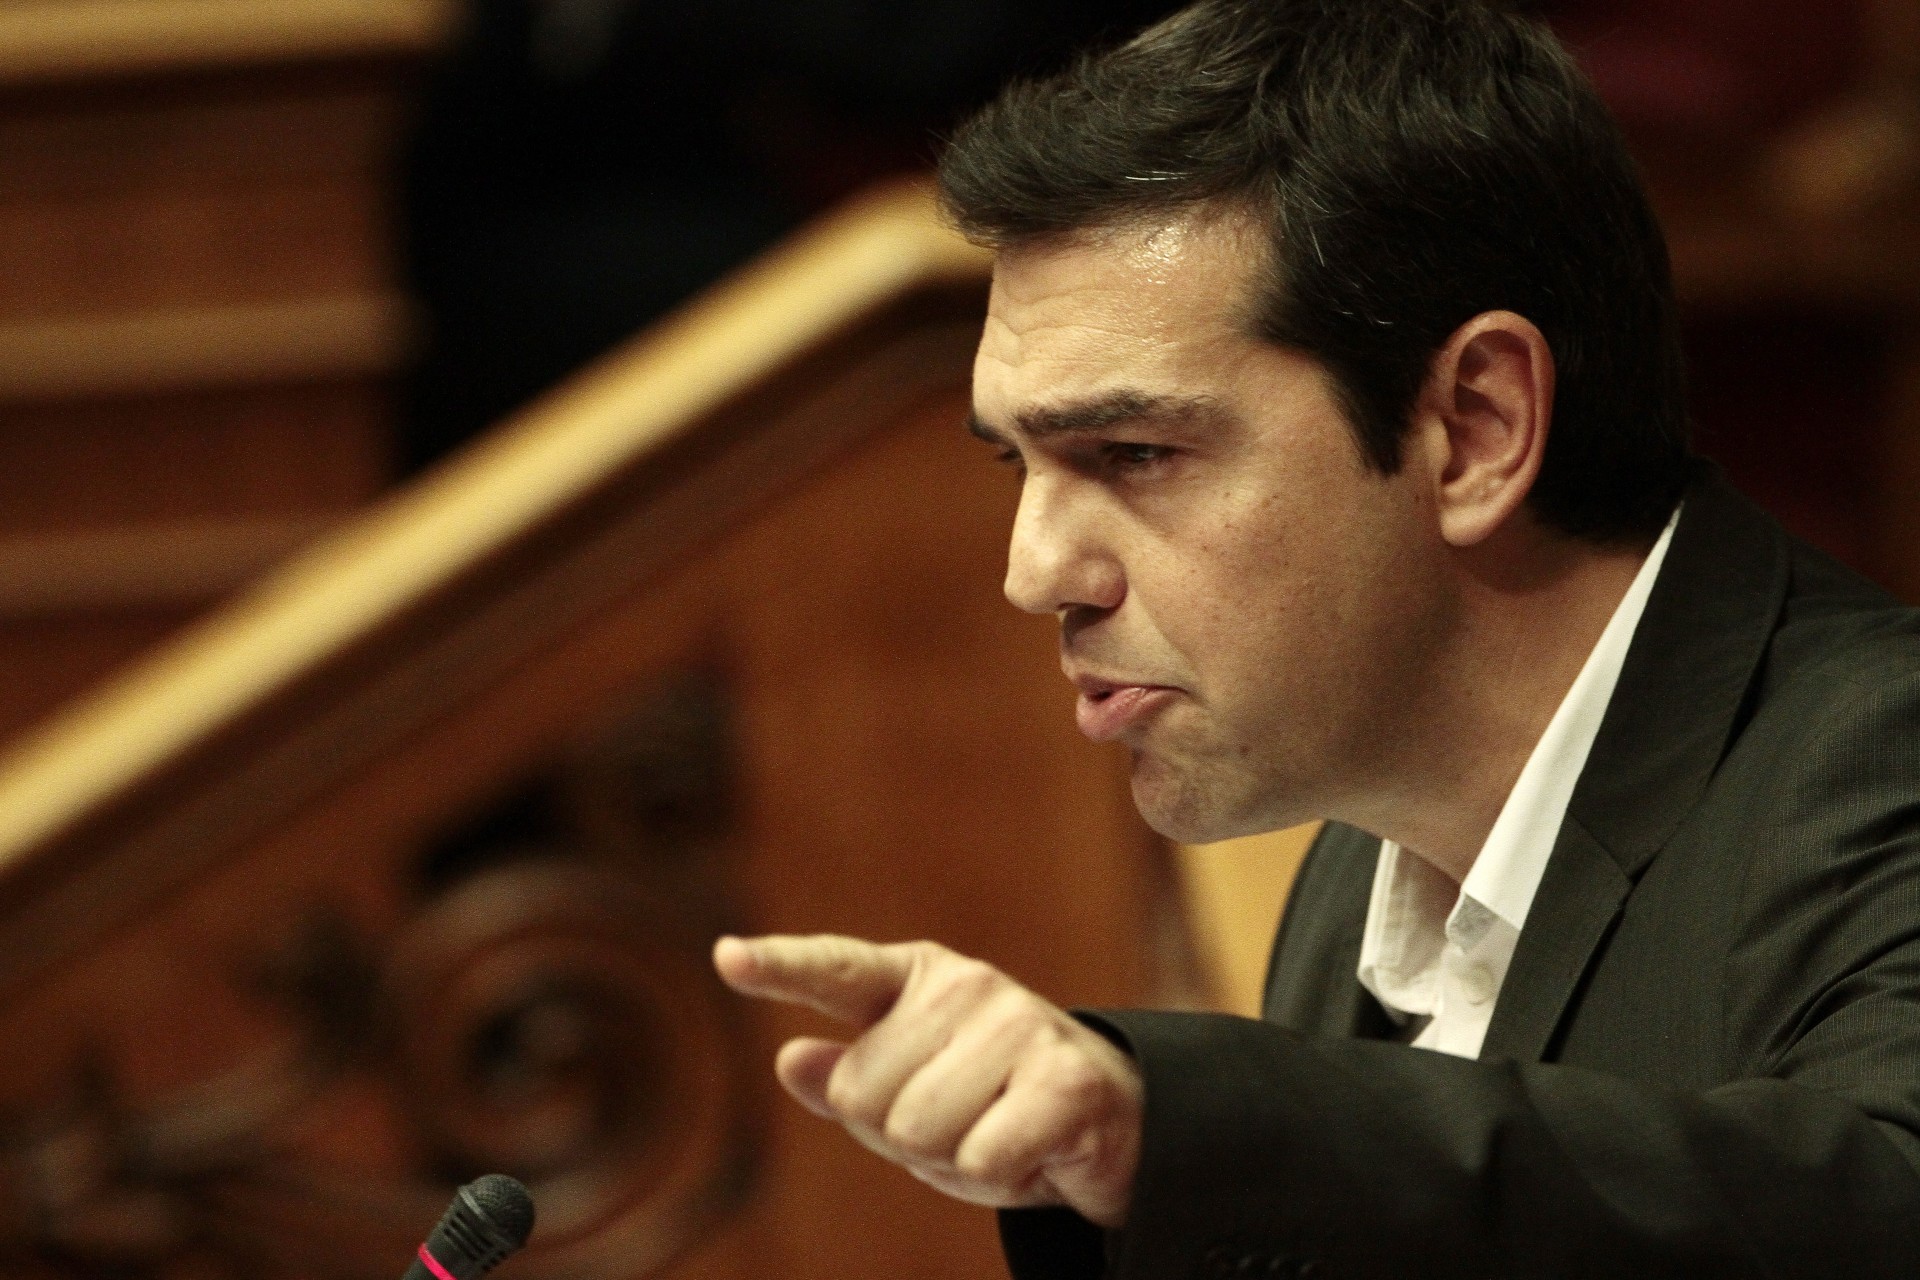 ÊÏÉÍÏÂÏÕËÉÏ ÂÏÕËÇ ÓÕÆÇÔÇÓÇ ÐÑÏÔÁÓÇ ÌÏÌÖÇÓ ÄÕÓÐÉÓÔÉÁÓ ÏËÏÌÅËÅÉÁ ÐÏËÉÔÉÊÇ ÐÏËÉÔÉÊÏÓ ÂÏÕËÅÕÔÇÓ 3ç ÇÌÅÑÁ   ÓÕÑÉÆÁ ÁëÝîçò Ôóßðñáò Alexis Tsipras SYRIZA